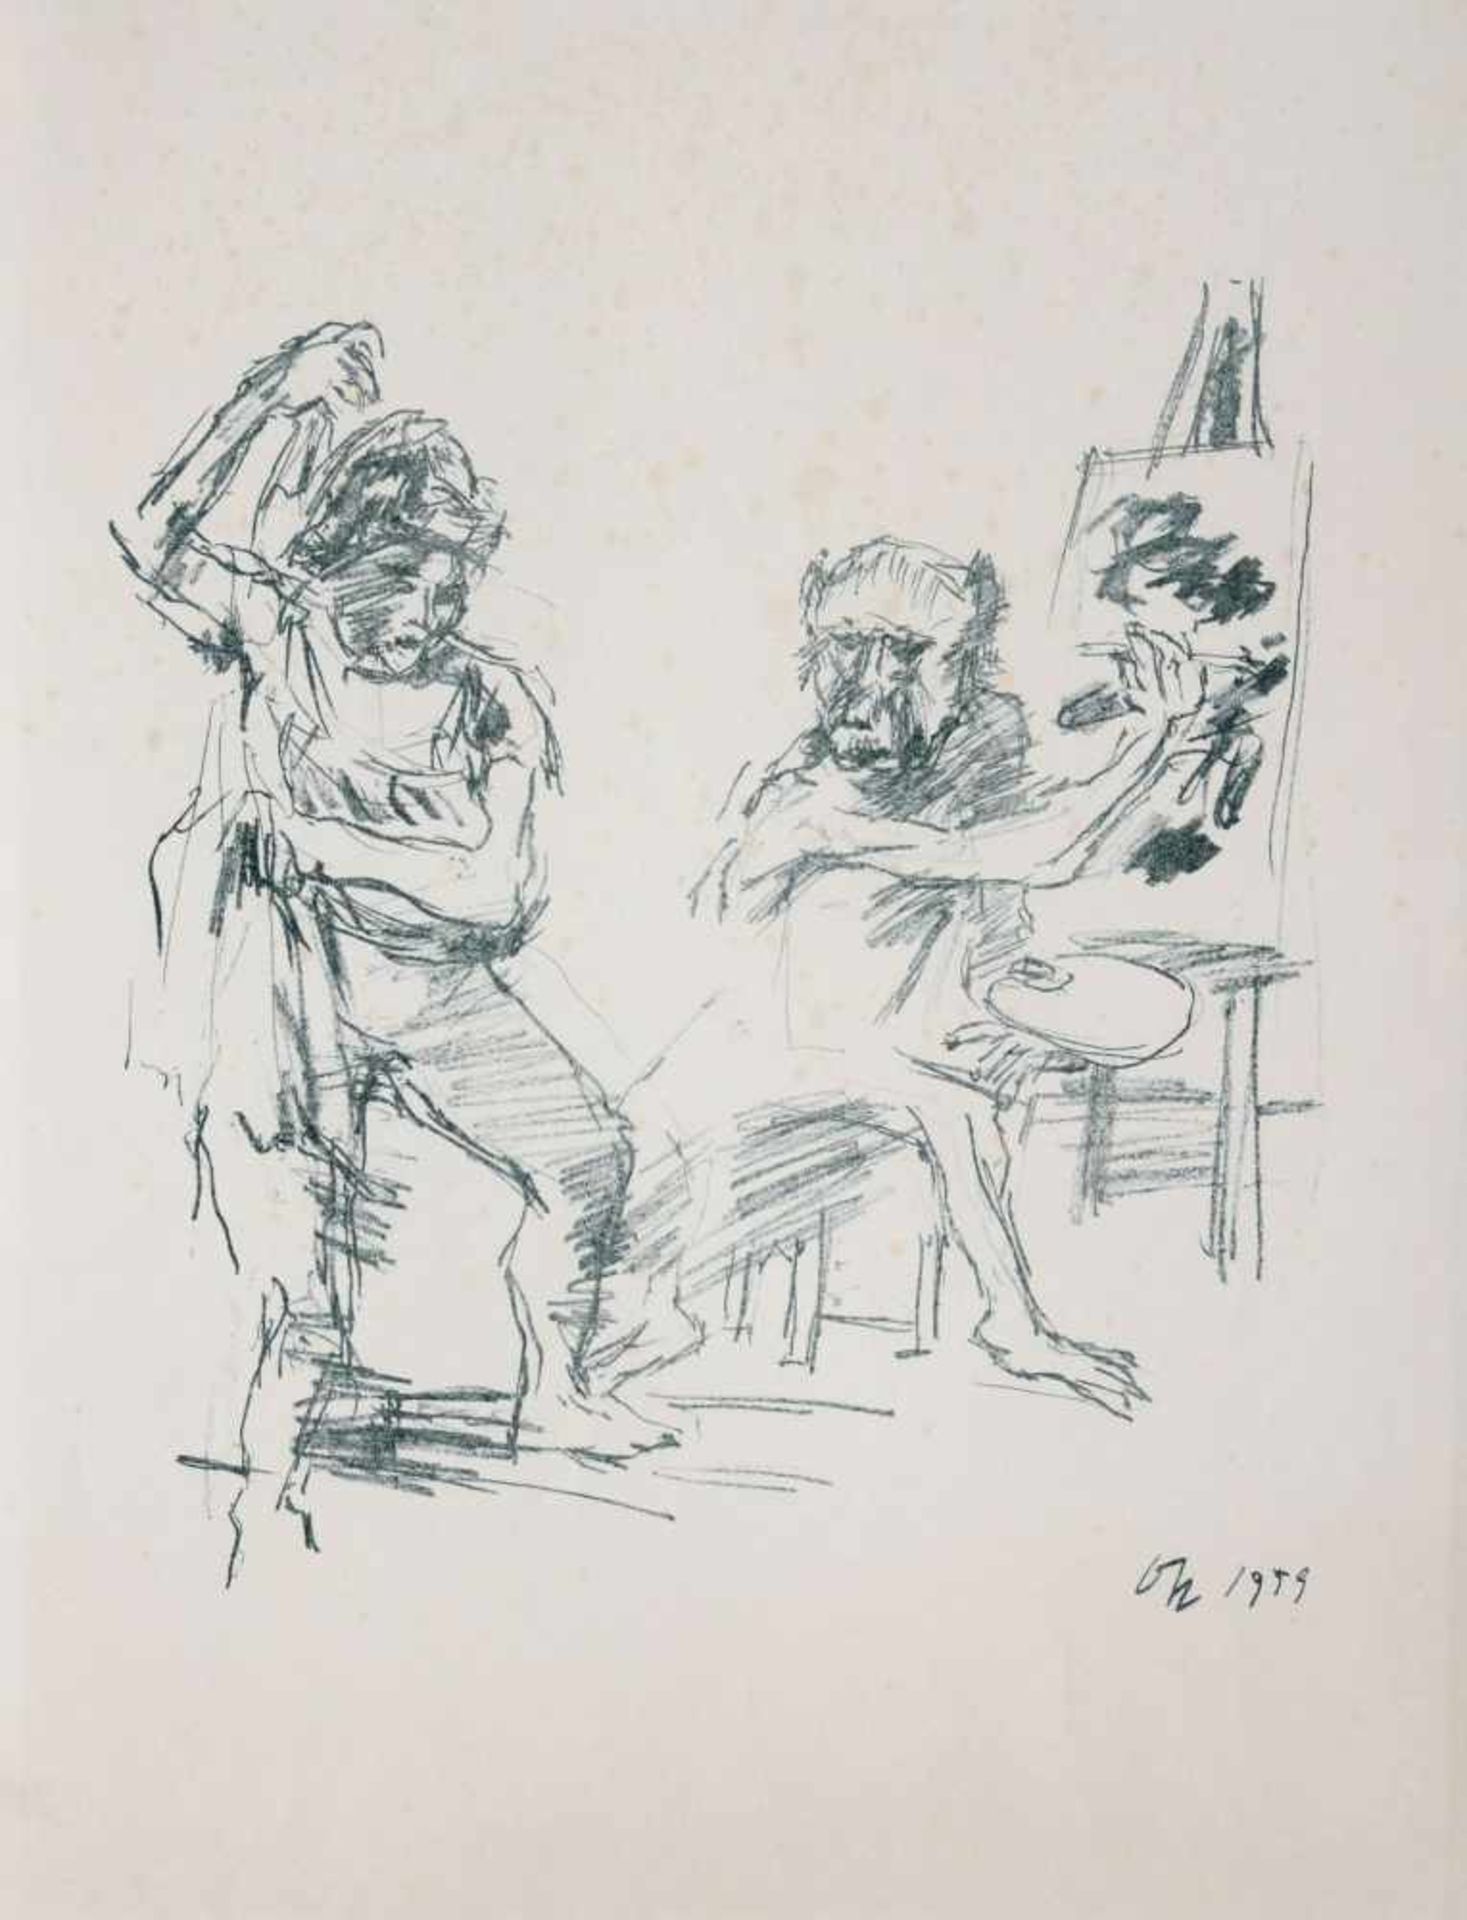 Oskar Kokoschka "The Action Painter" 1959.Oskar Kokoschka 1886 Pöchlarn  1980